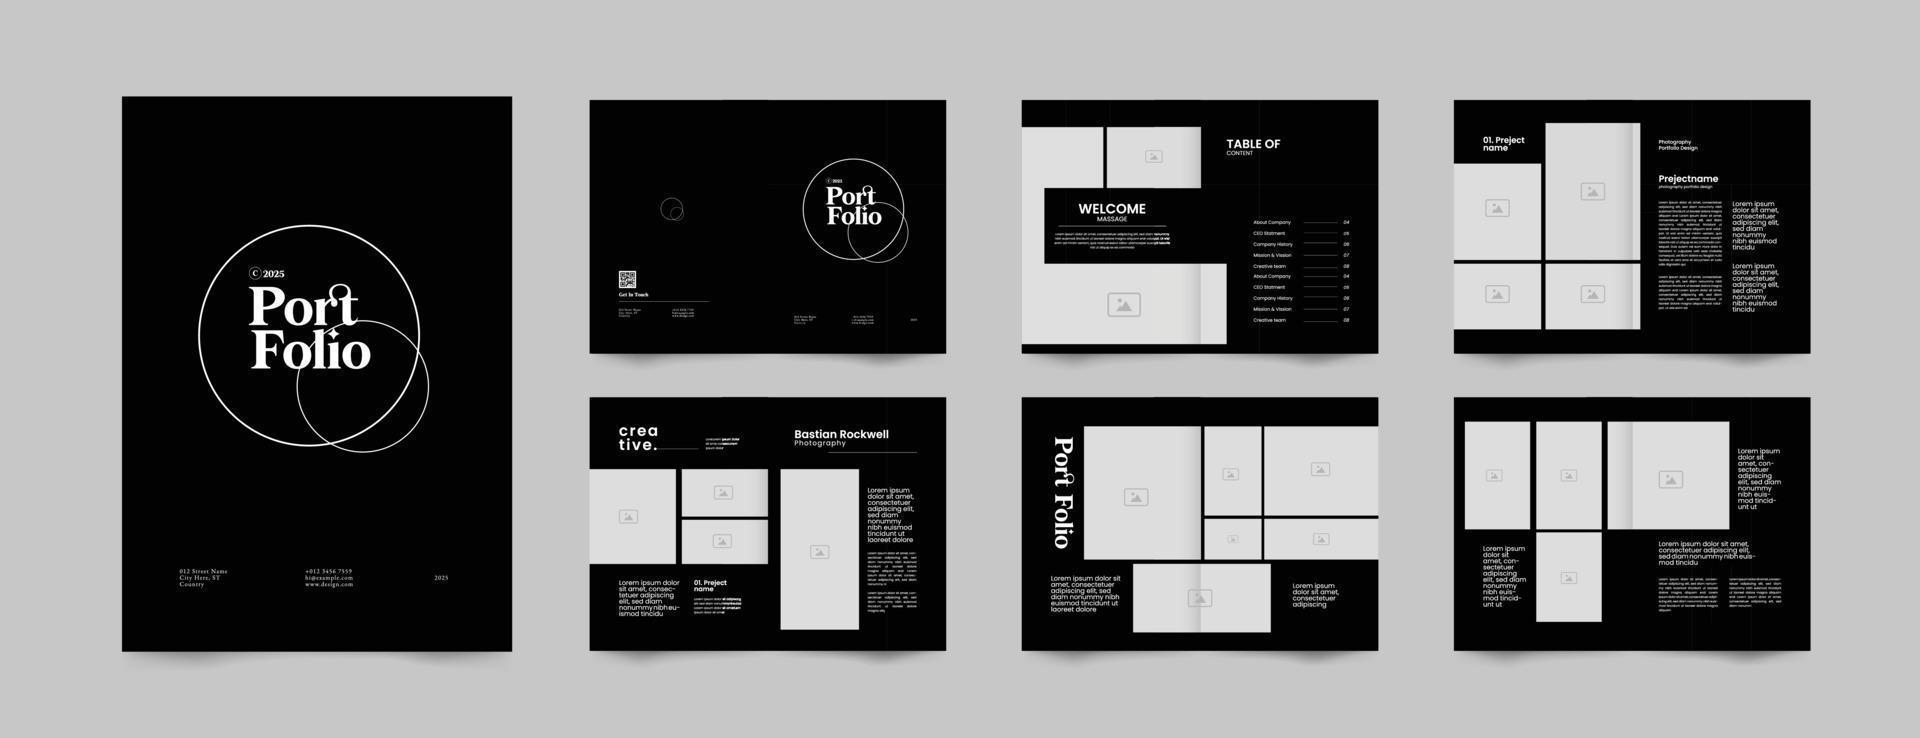 12 sidor av minimalistisk fotografi portfölj layout design mall, tidskrift, förslag, profil broschyr mall design vektor